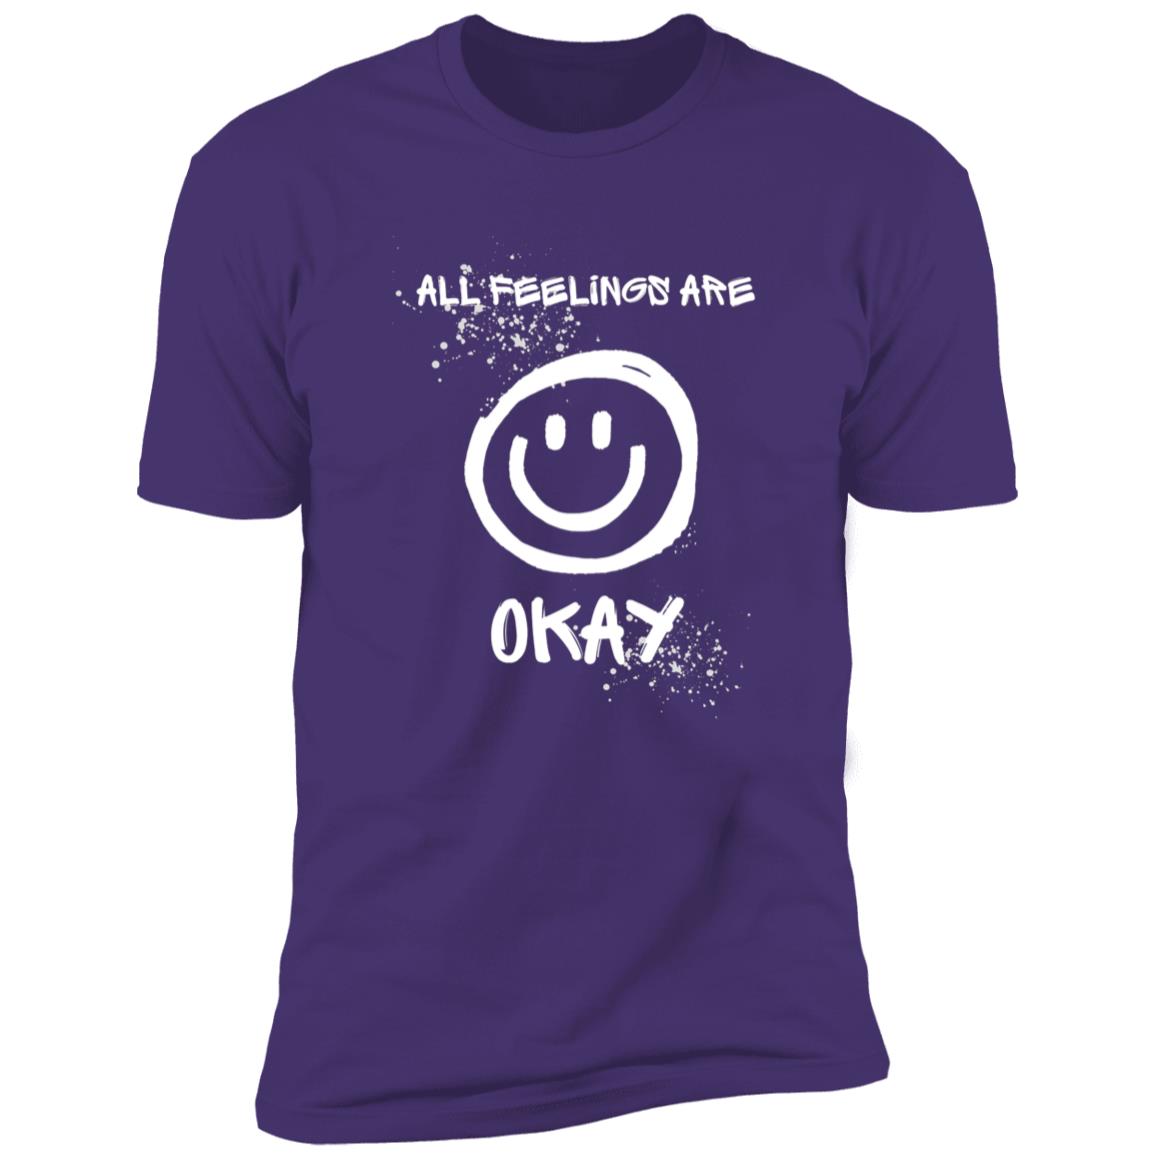 All Feelings Are OK T-Shirt